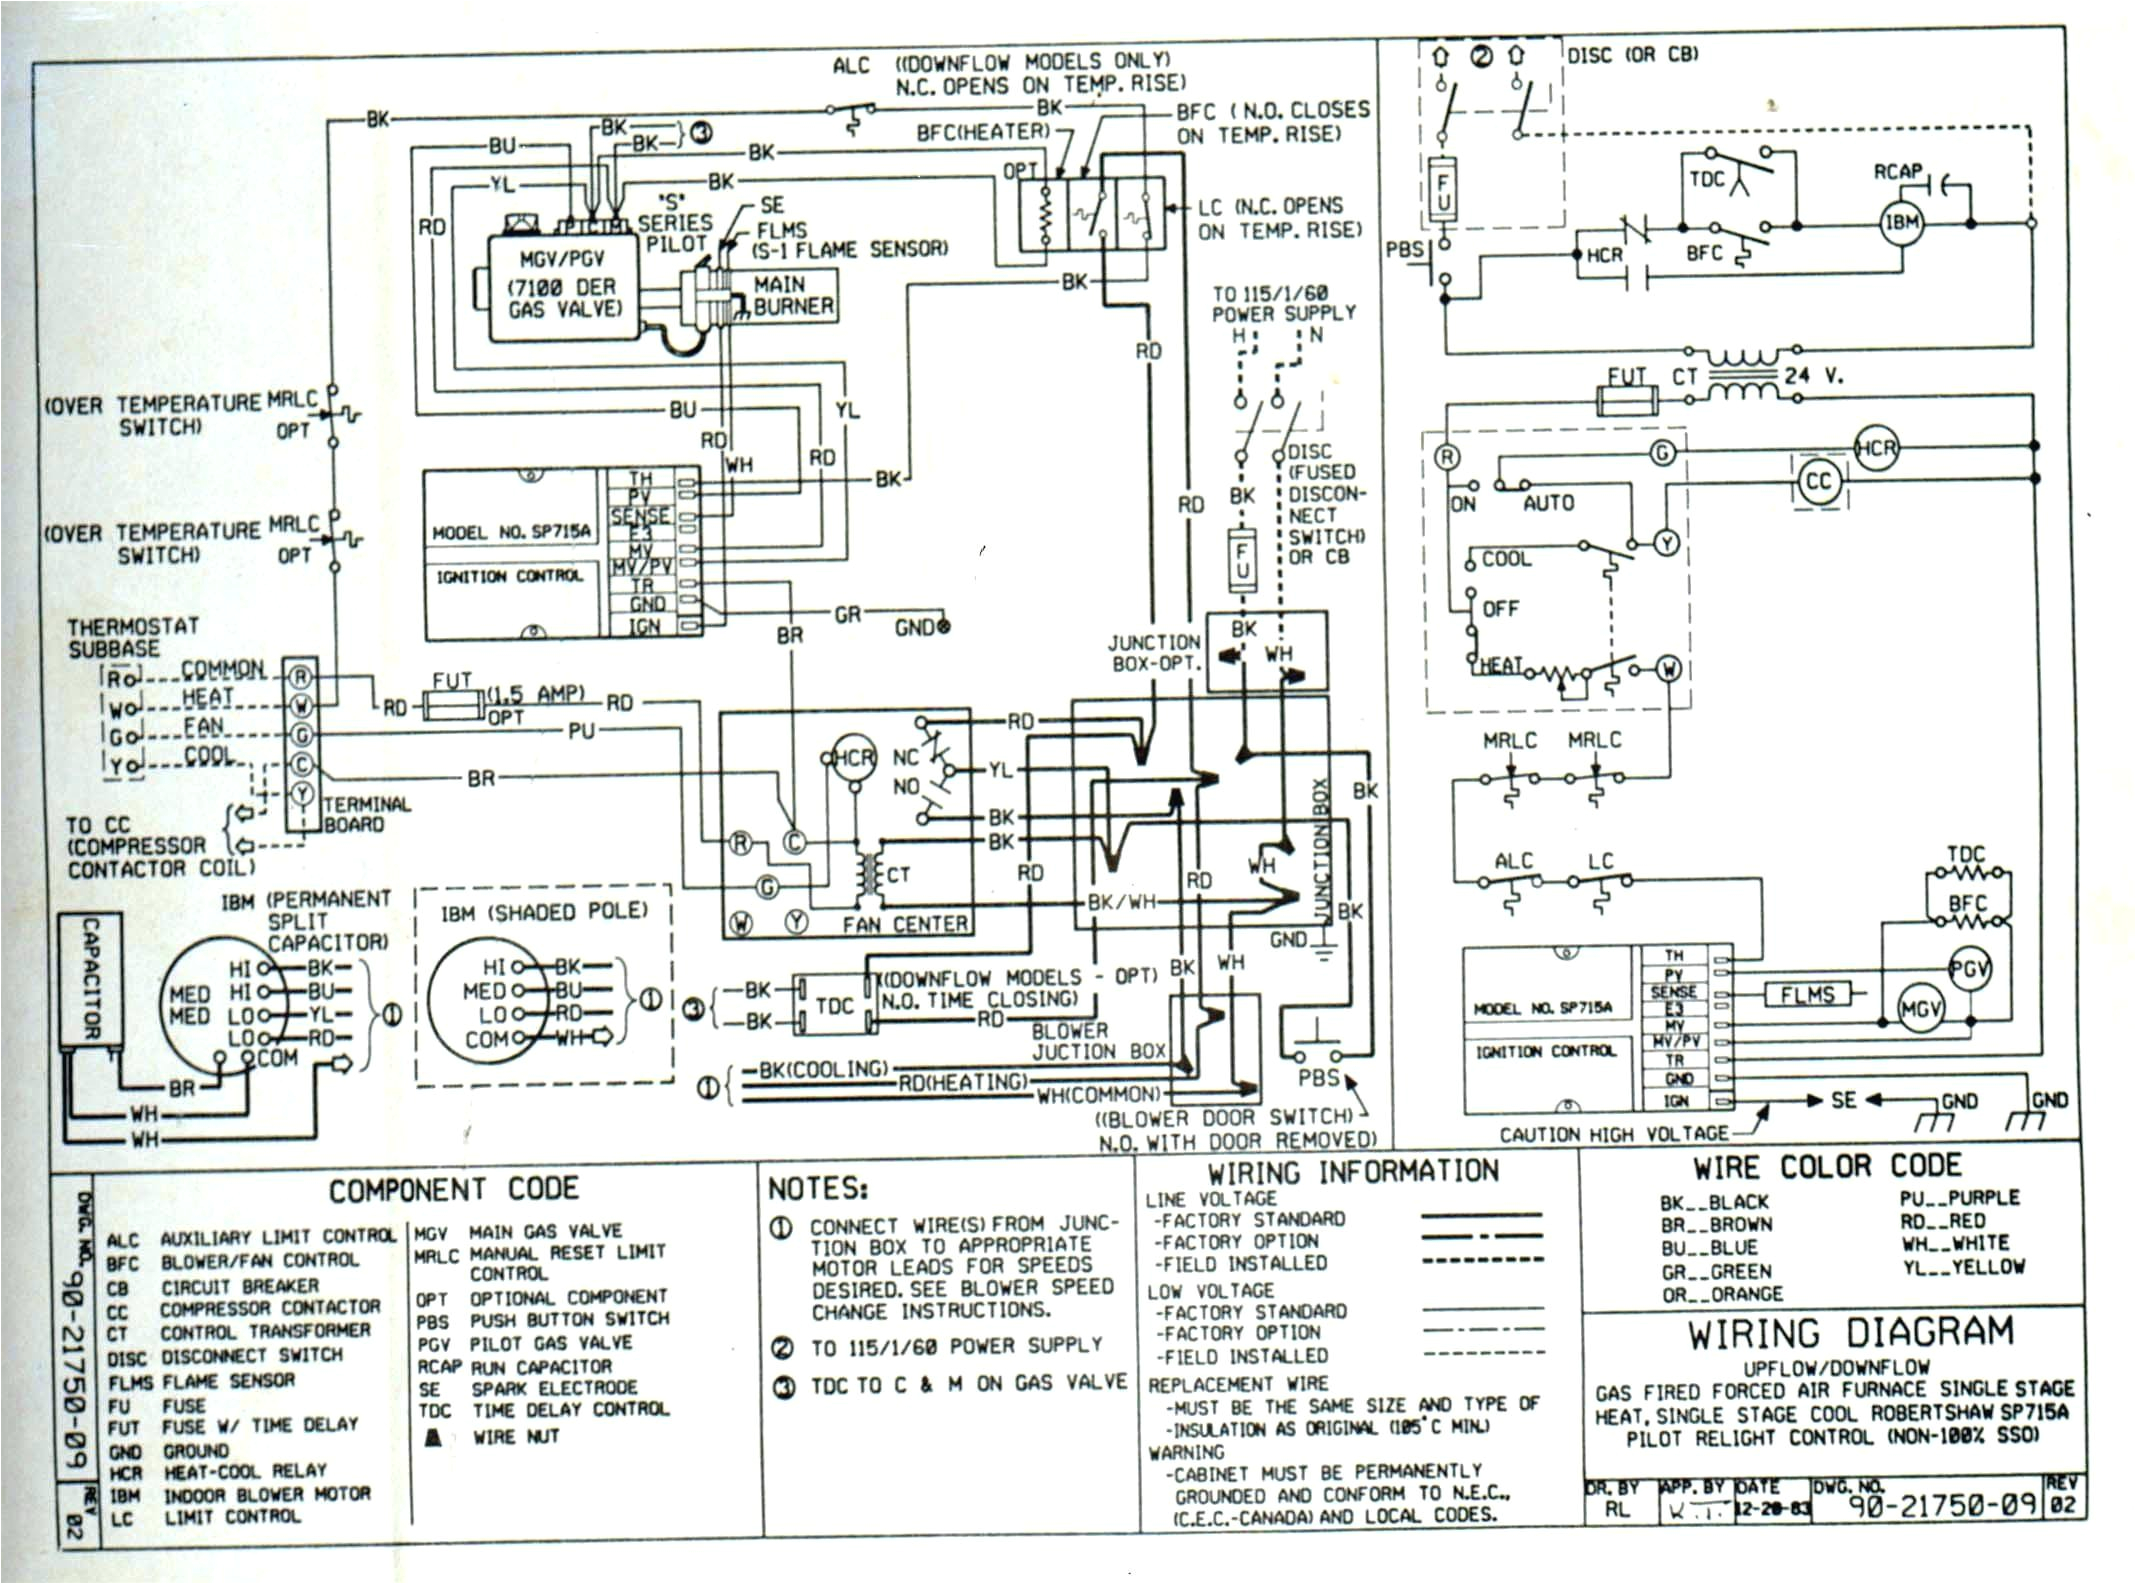 trane wiring schematics wiring diagram inside trane wiring diagrams hvac trane wiring diagram